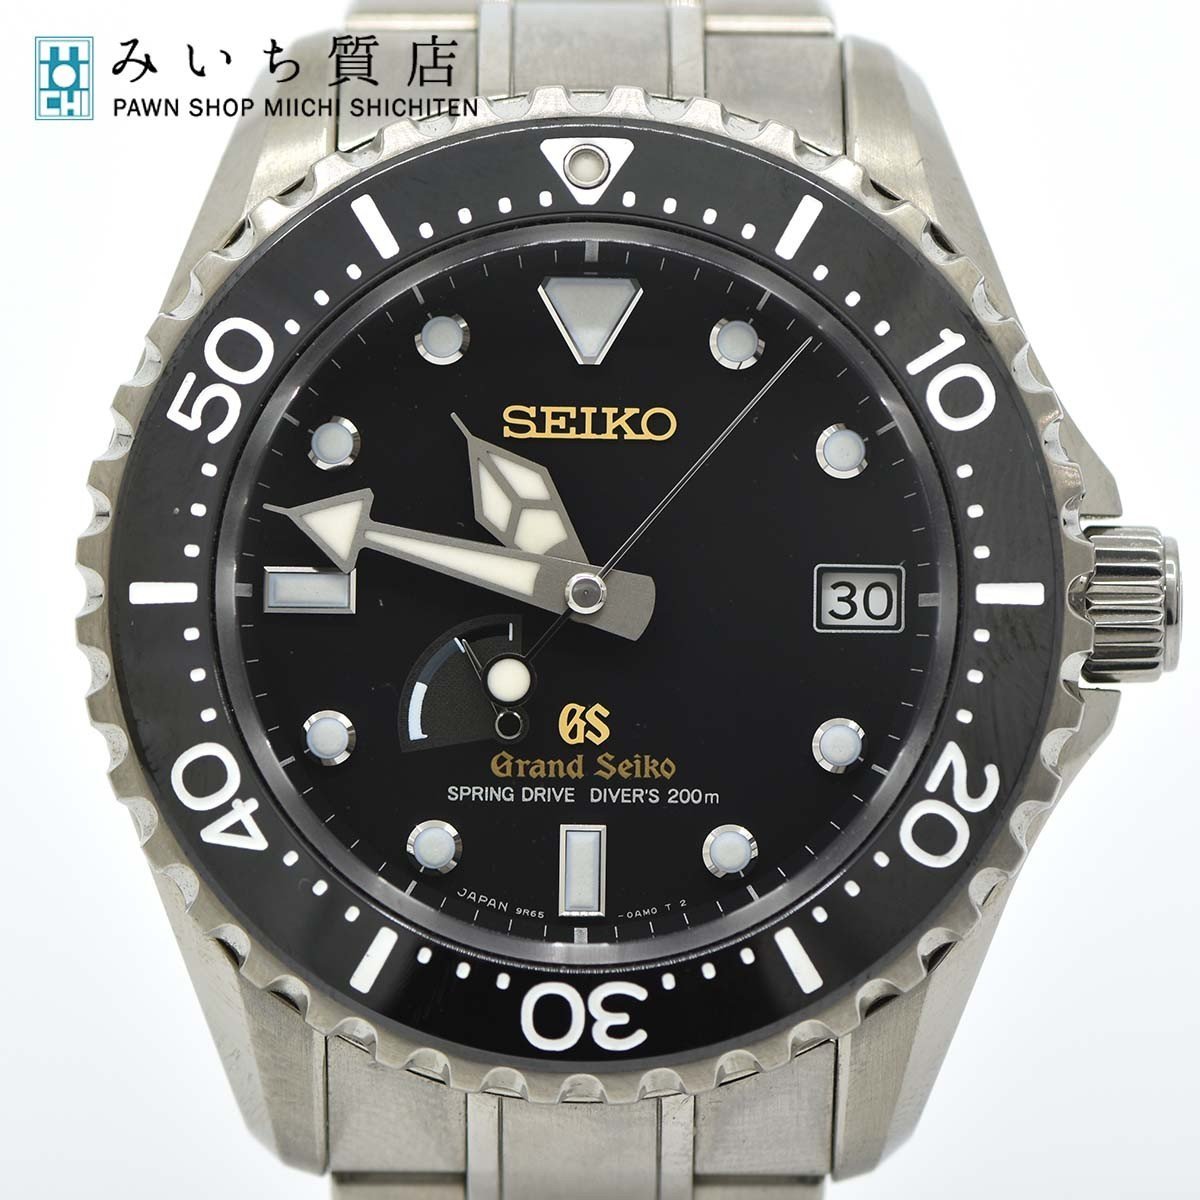 質屋 腕時計 Grand Seiko グランドセイコー GS SBGA031 9R65-0AN0 スプリングドライブ ダイバーズウォッチ 20s1169-1 みいち質店